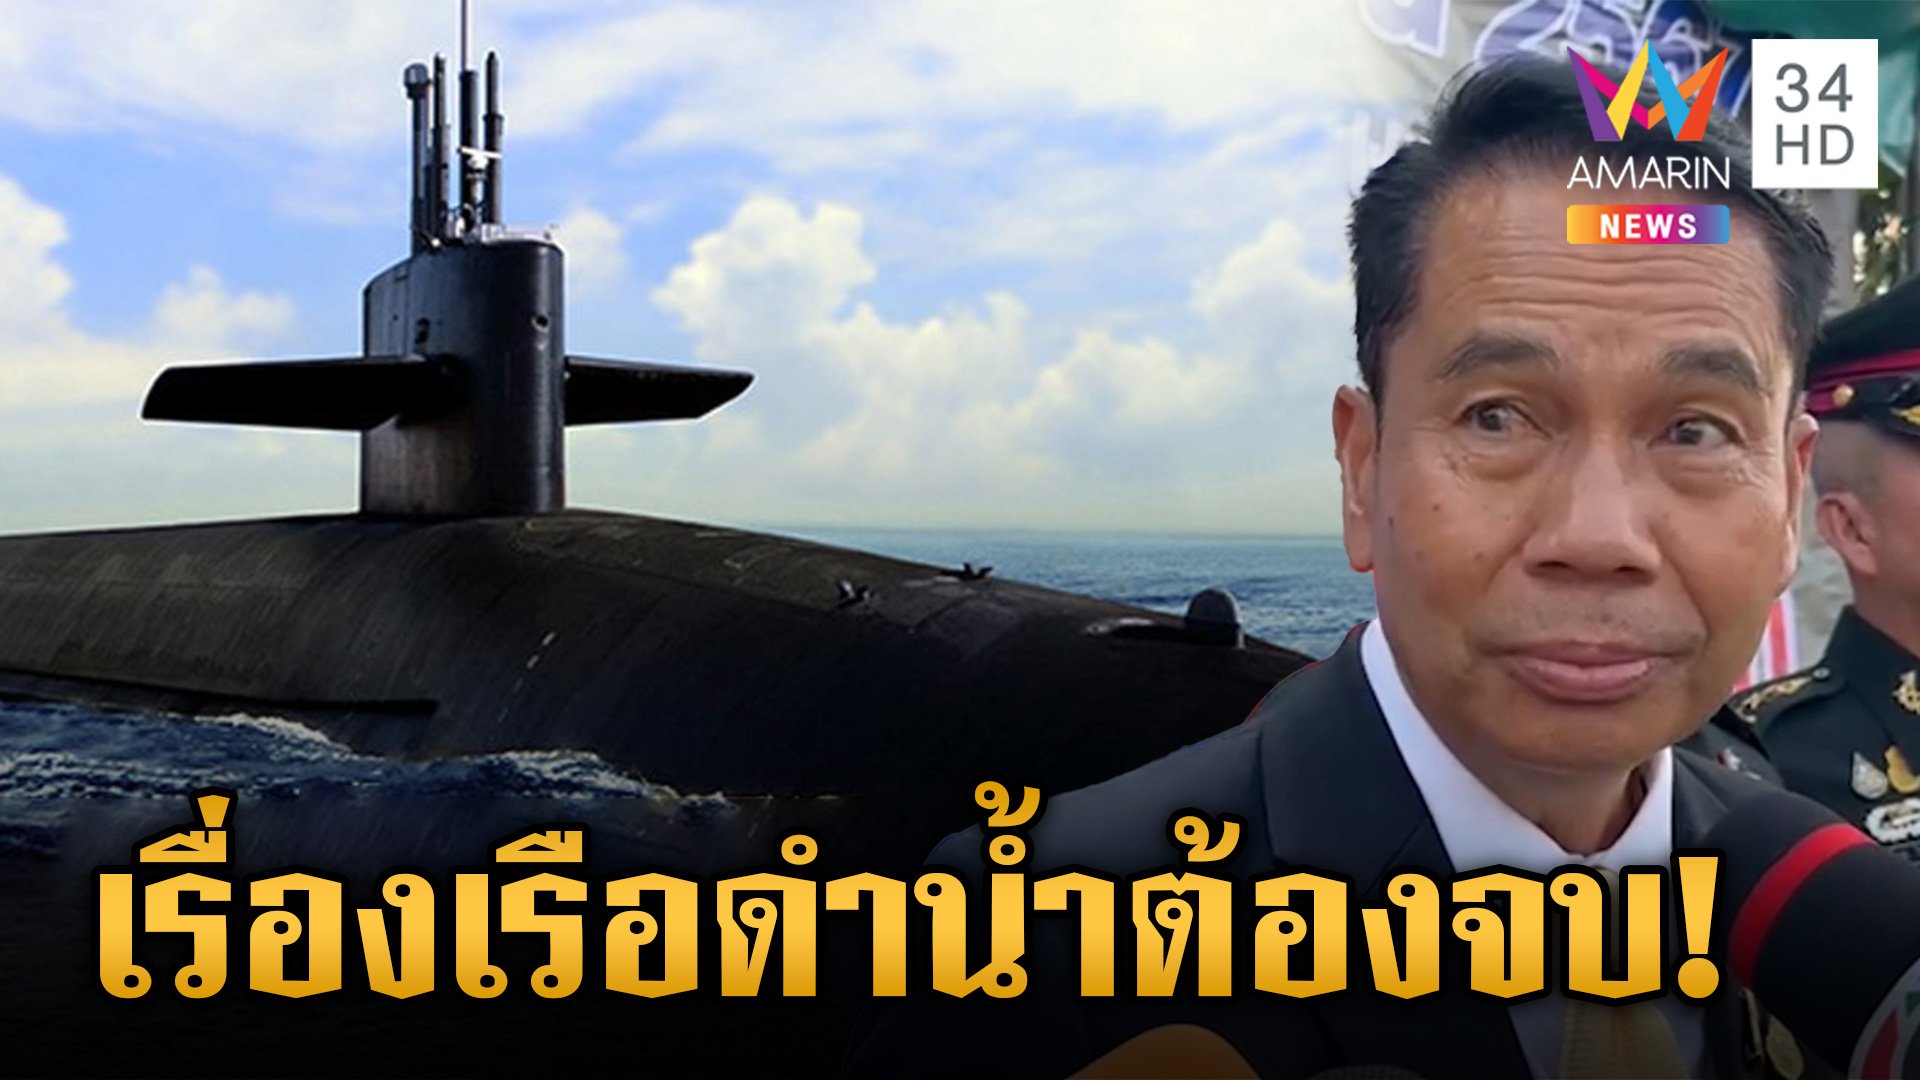 "บิ๊กทิน" รับคุย "จีน" ยกเลิกเรือดำน้ำ เปลี่ยนเป็น "เรือผิวน้ำ" แทน | ข่าวเย็นอมรินทร์ | 1 เม.ย. 67 | AMARIN TVHD34